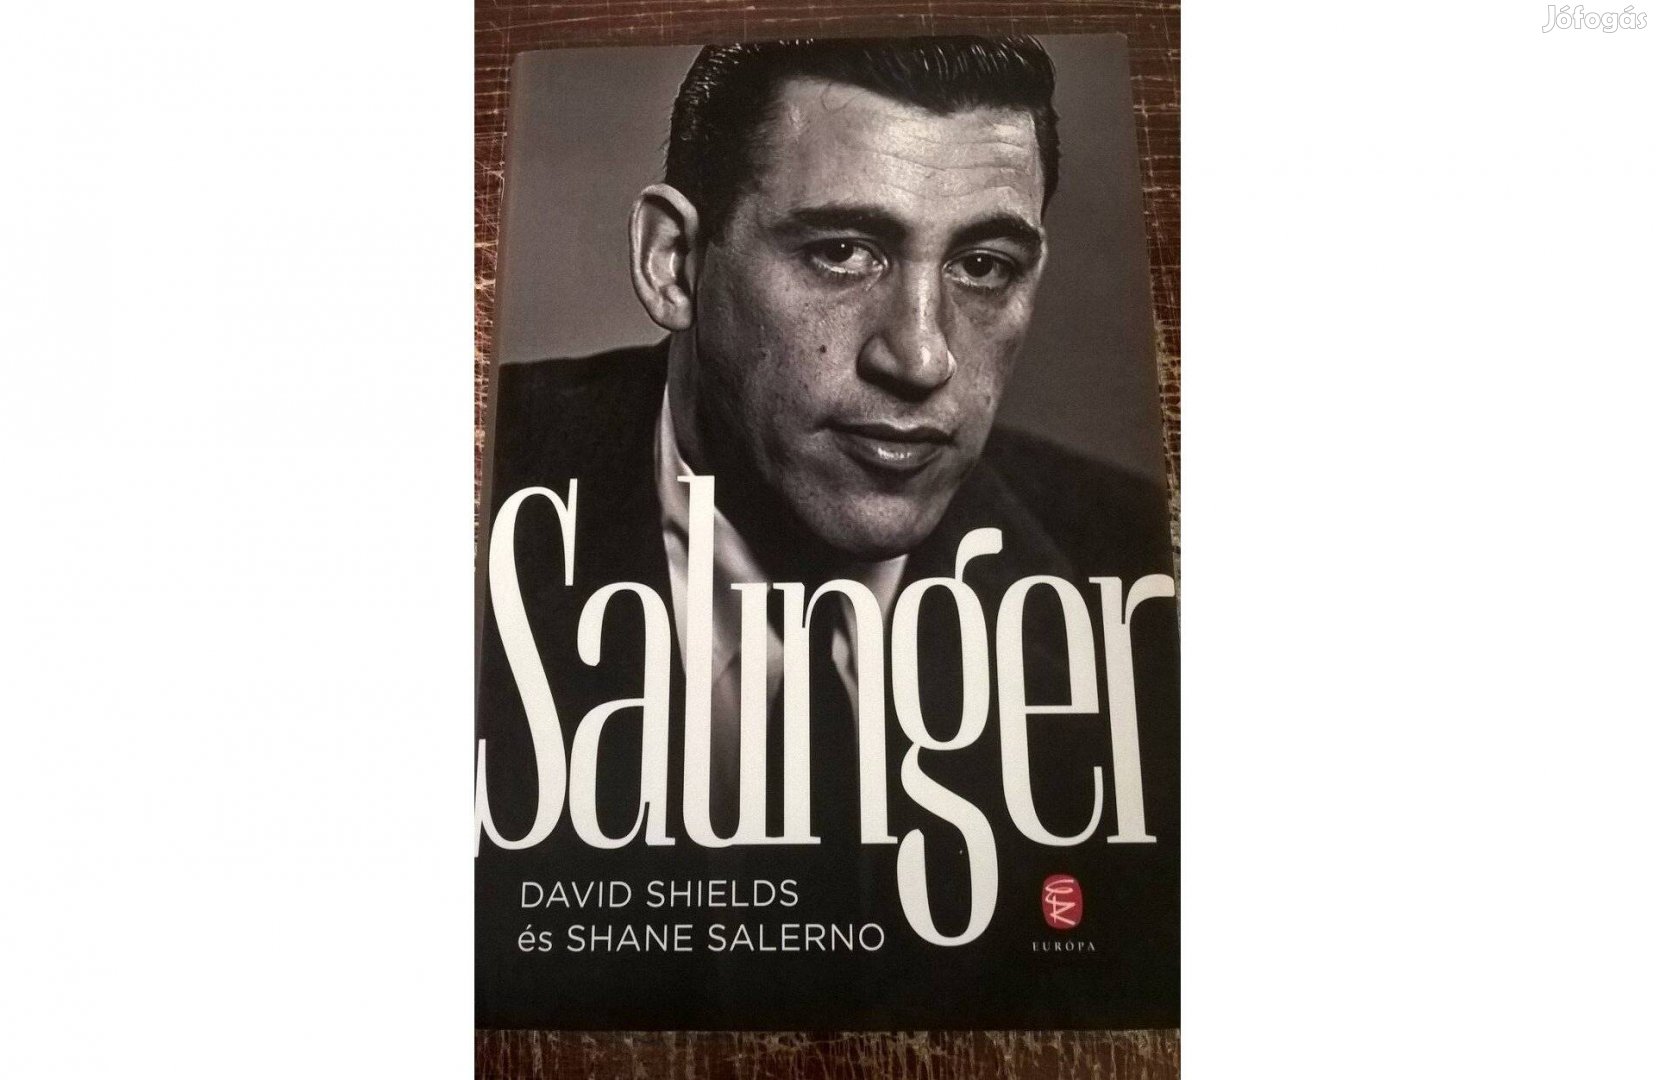 Shane Salerno, David Shields - Salinger